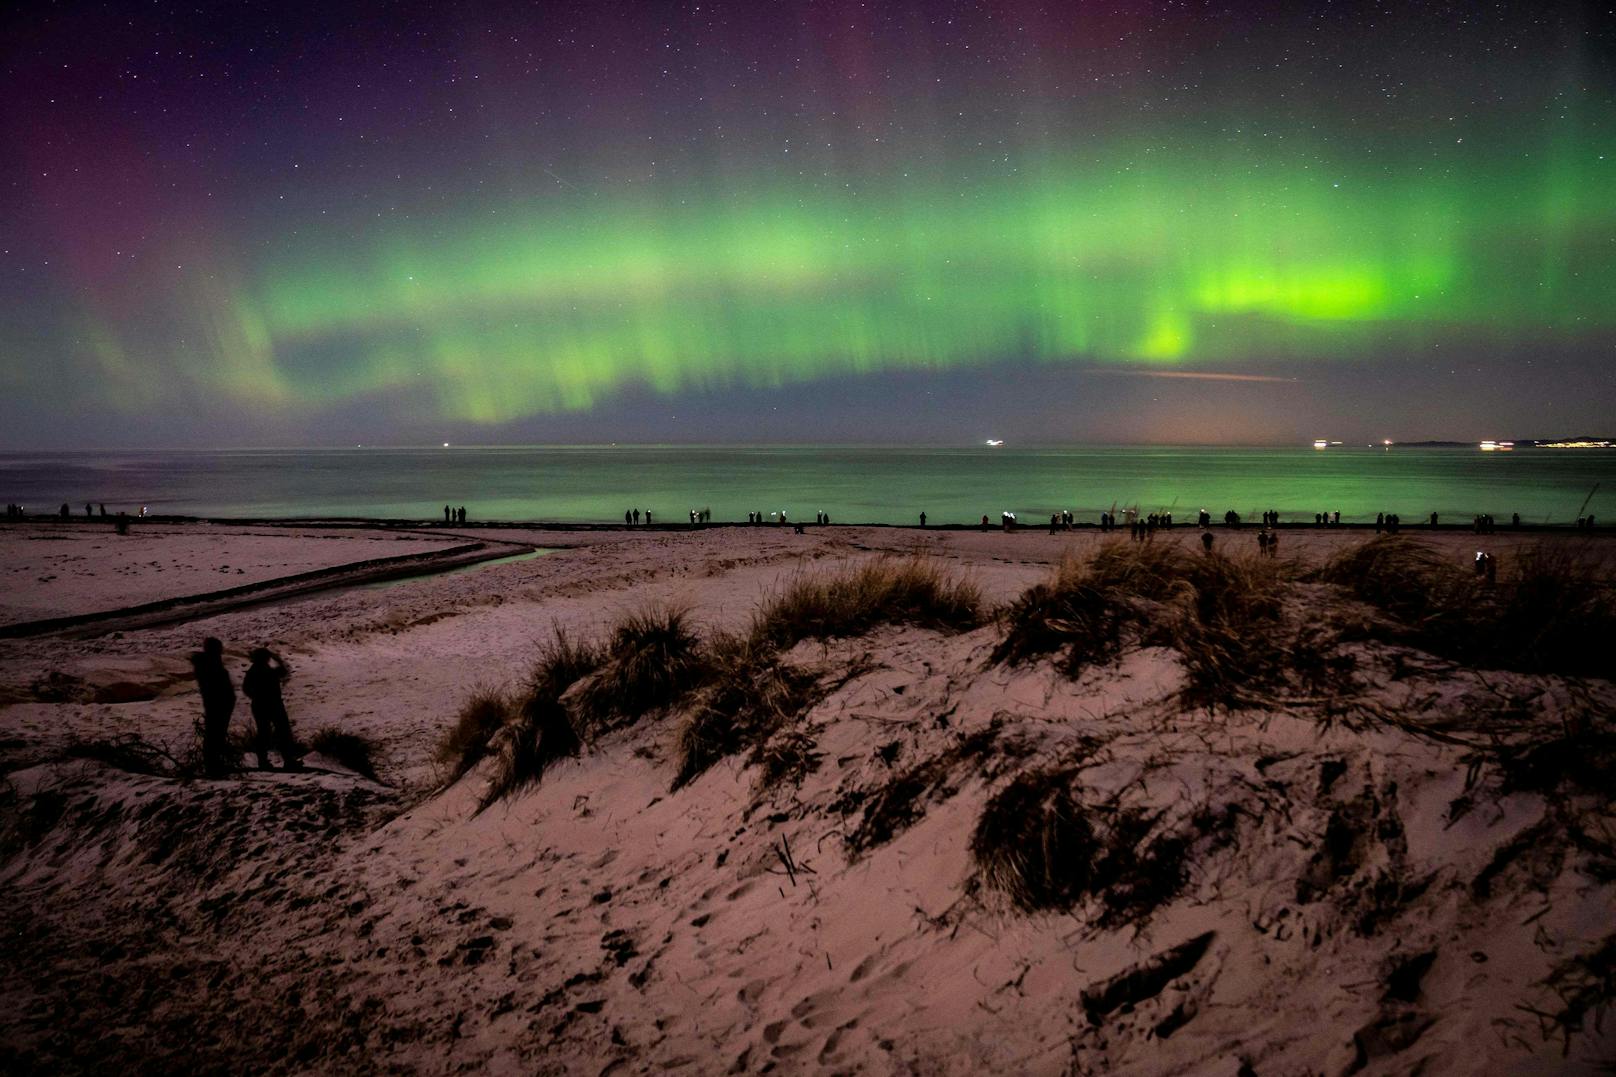 Zahlreiche Schaulustige hatten sich am Strand des dänischen Badeortes Hornbæk versammelt, um das ungewöhnliche Nordlicht-Gewitter zu bestaunen.